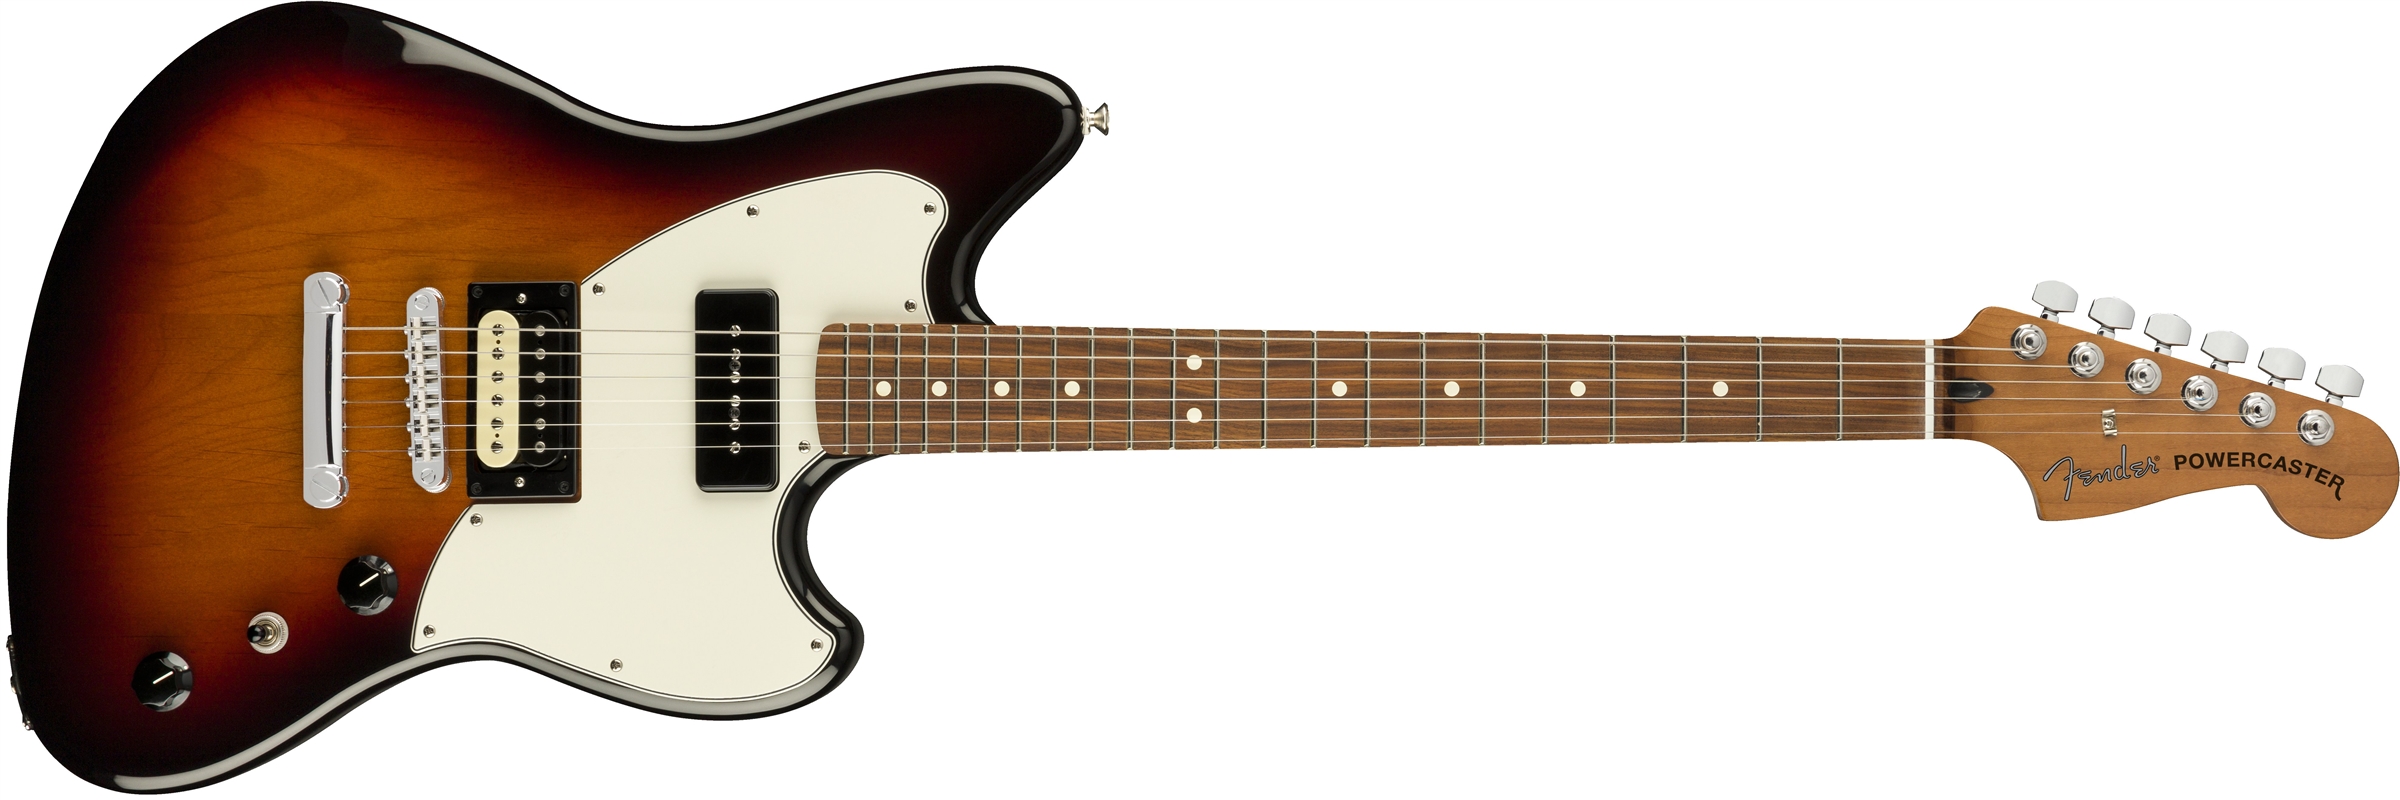 65431円 超激得SALE Fender The Powercaster